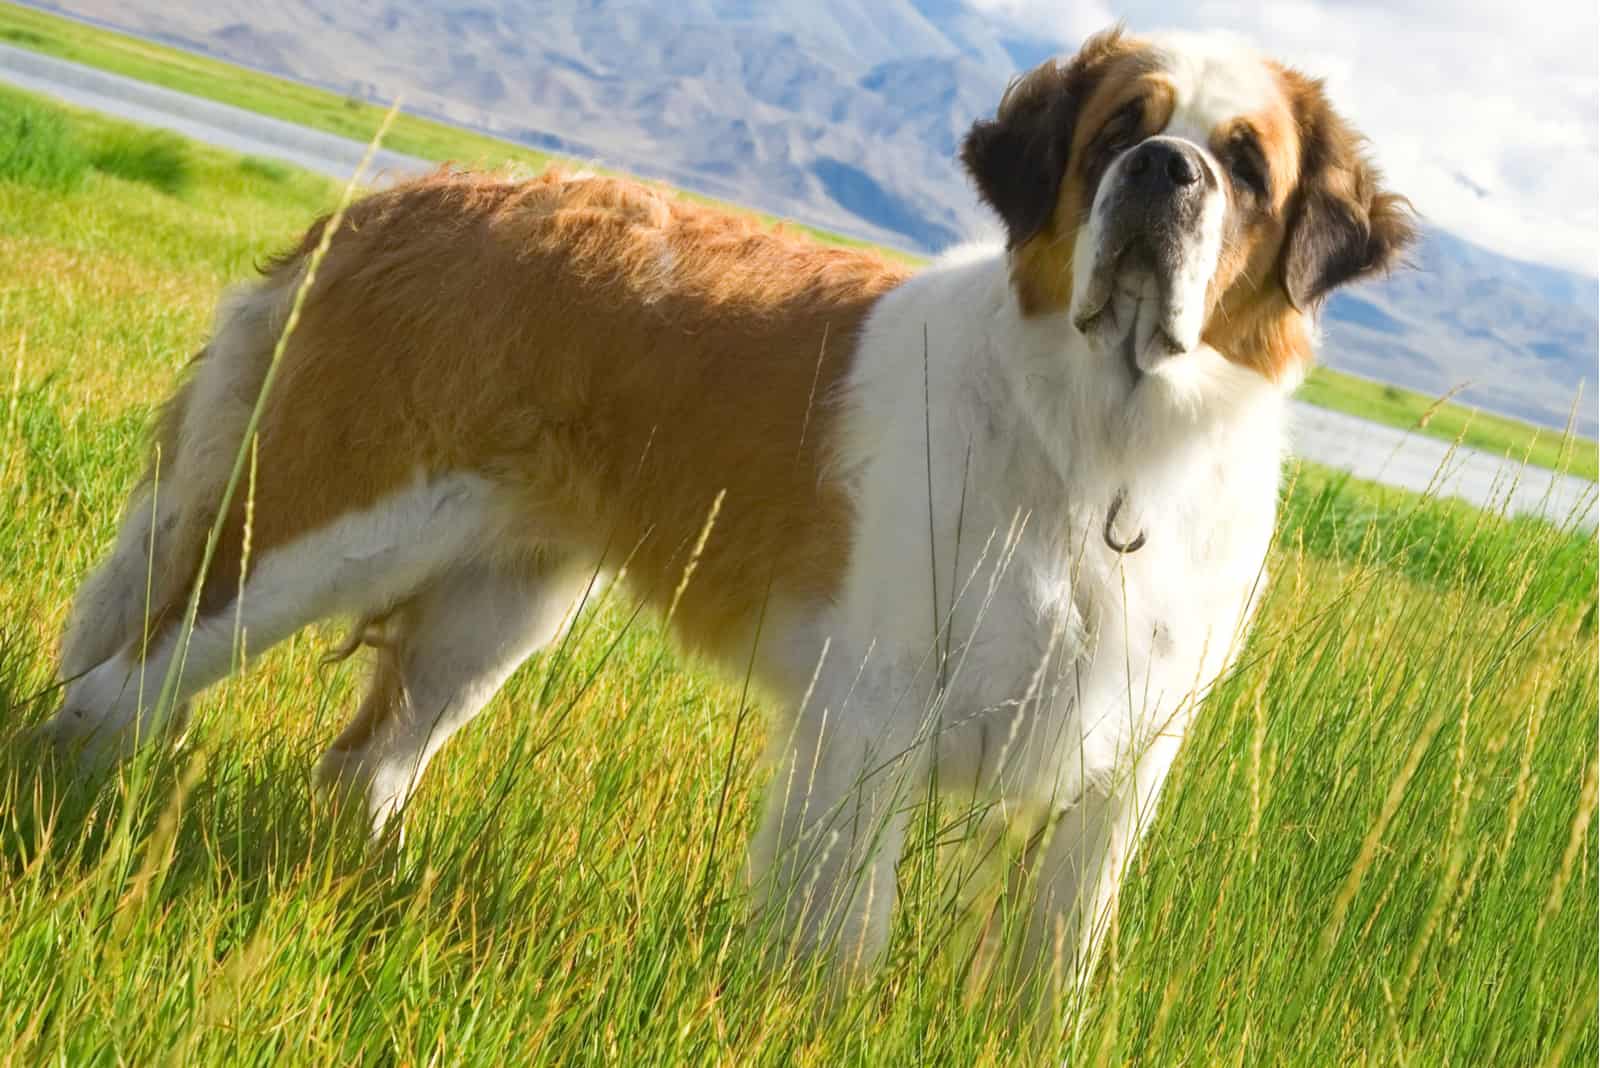 a beautiful Saint Bernard dog standing in the grass